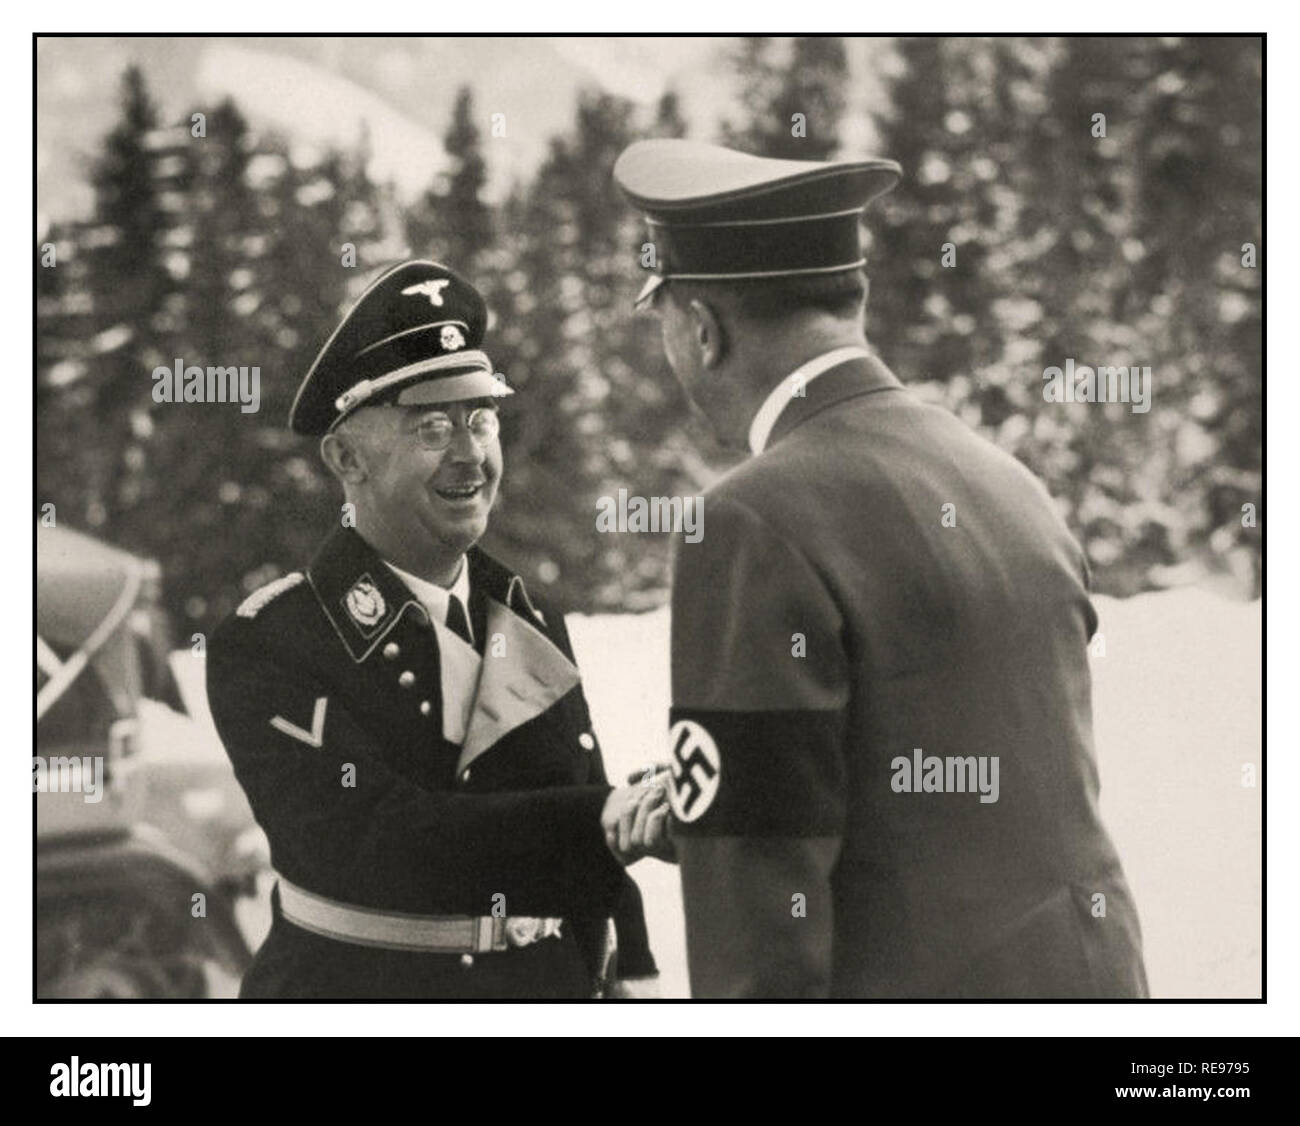 1939 Reichsführer Heinrich Himmler de la Schutzstaffel (SS), l'Escadron de protection, et l'un des principaux membres du parti nazi (NSDAP) de l'Allemagne, accueille le Führer Adolf Hitler au Berghof Obersalzberg près de Berchtesgaden Allemagne Bavière en hiver Banque D'Images